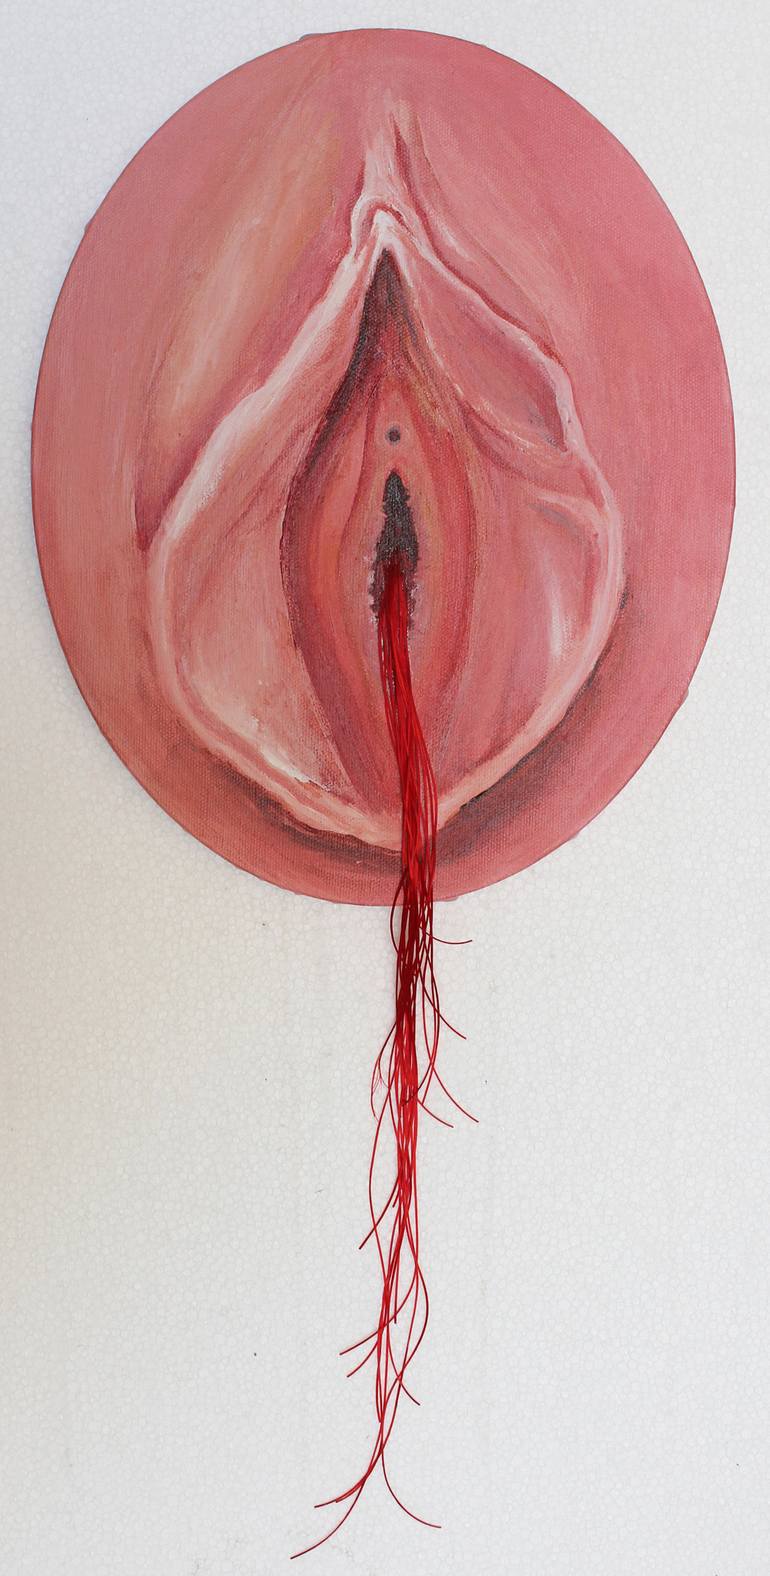 Artistic Open Vagina